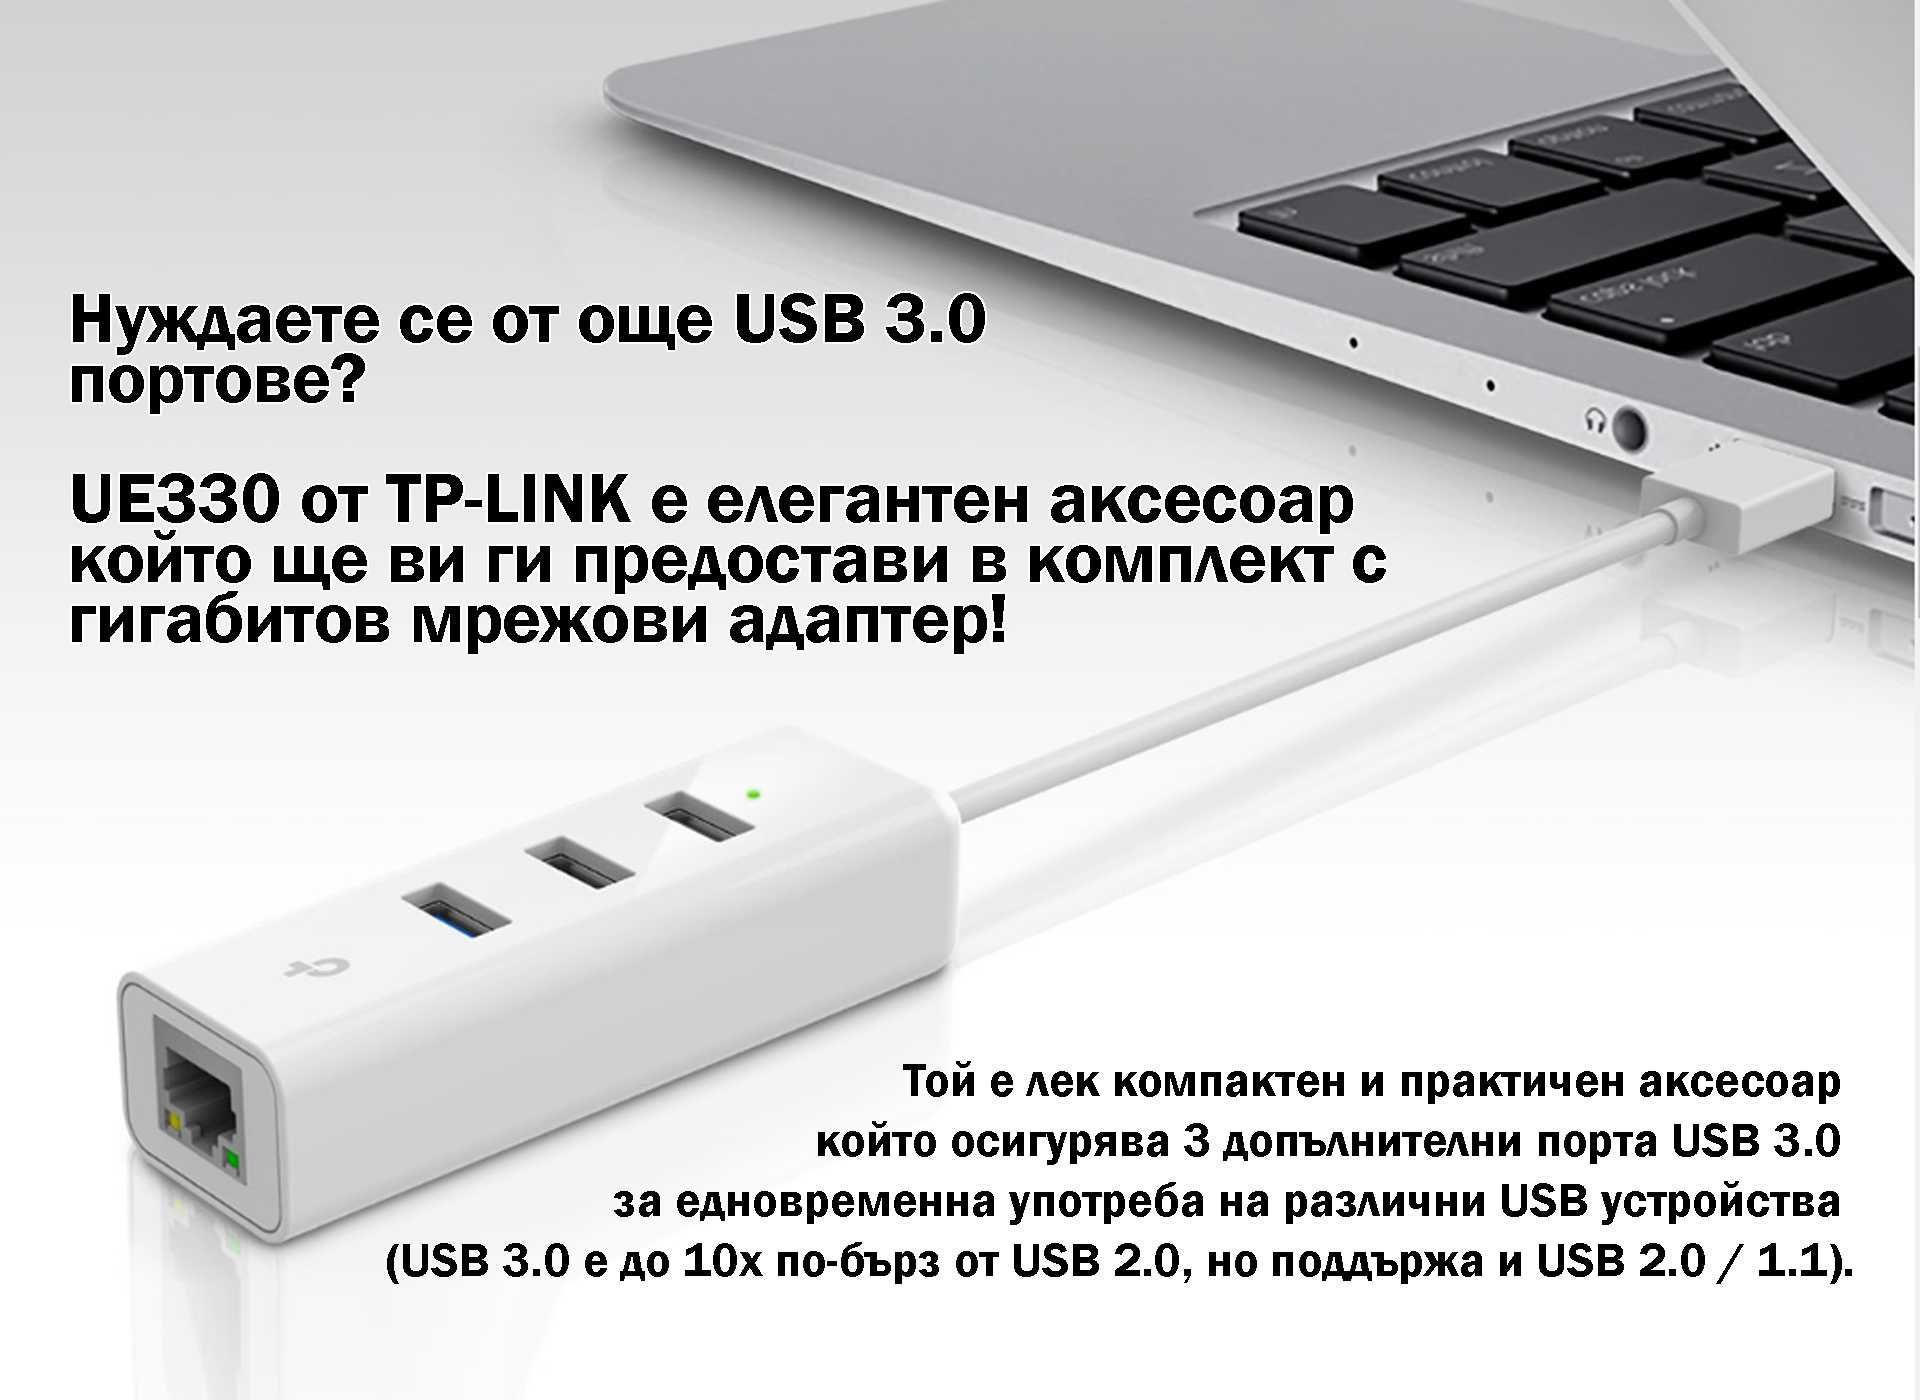 TP-Link USB 3.0 Hub & Gigabit Ethernet UE330